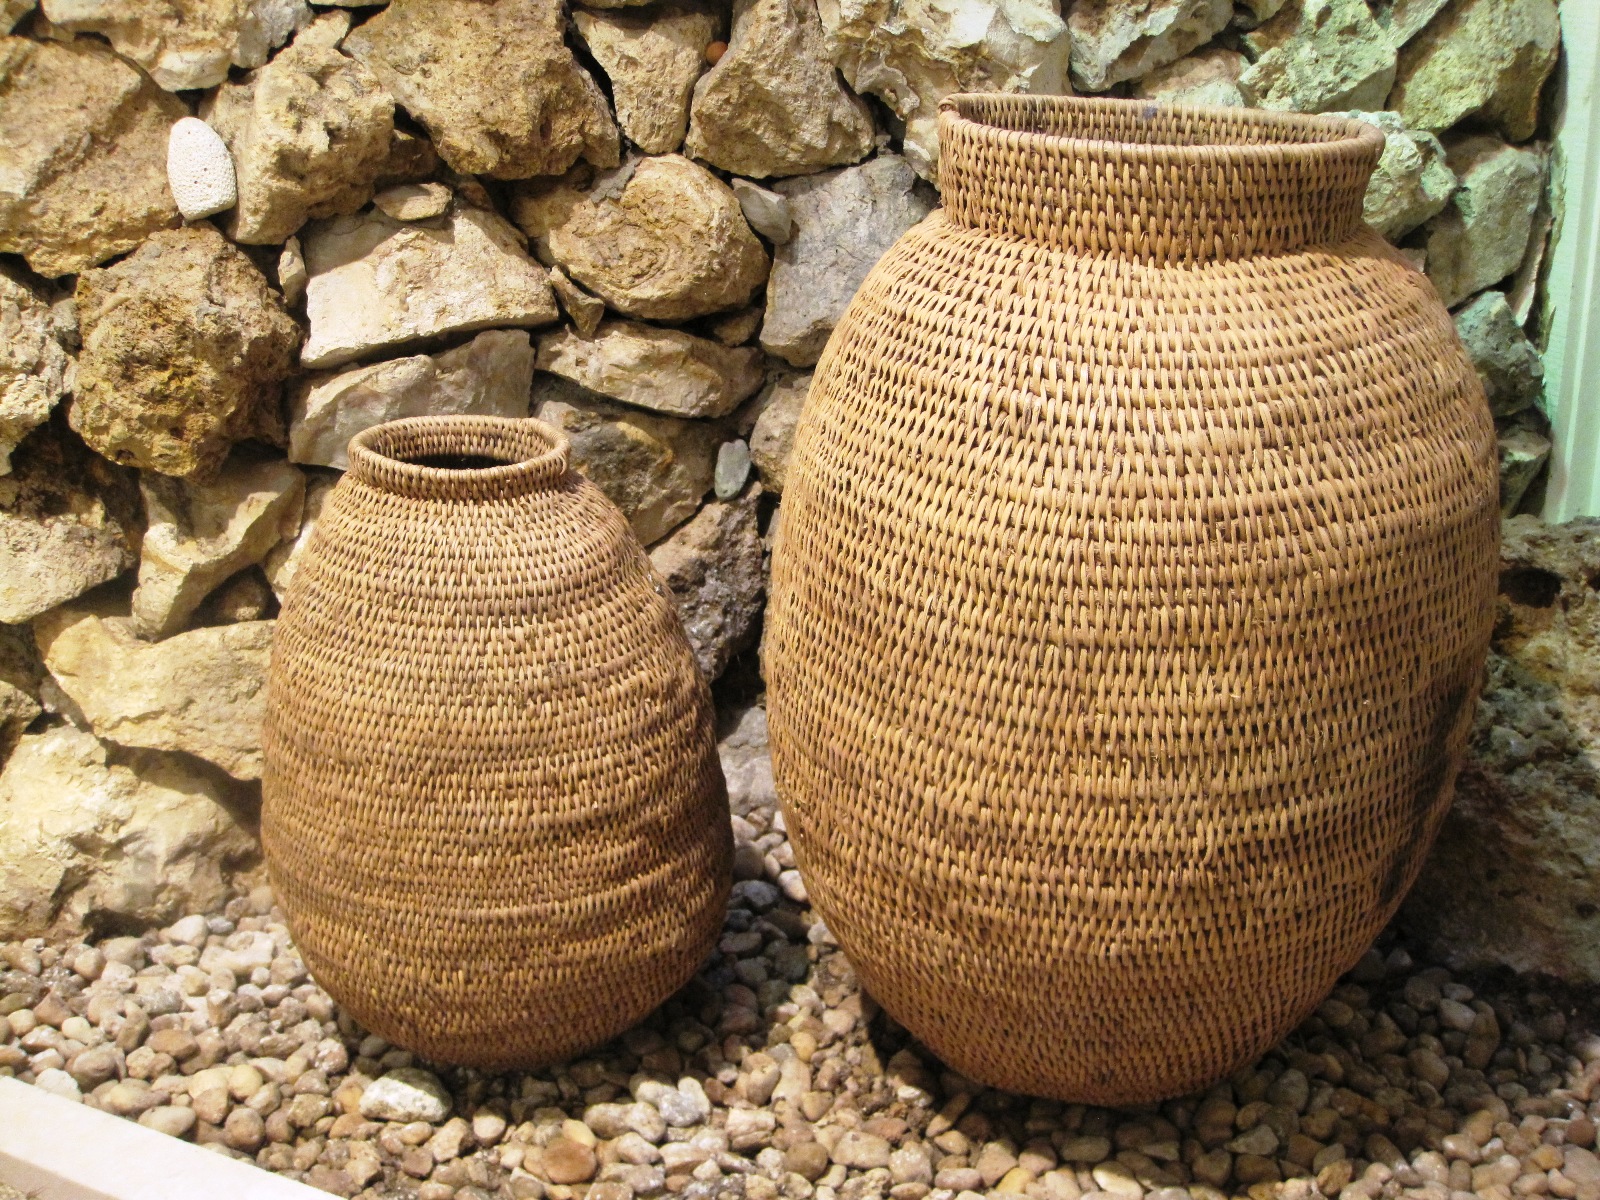 Buhera Tall baskets - Size: 27" - 33"